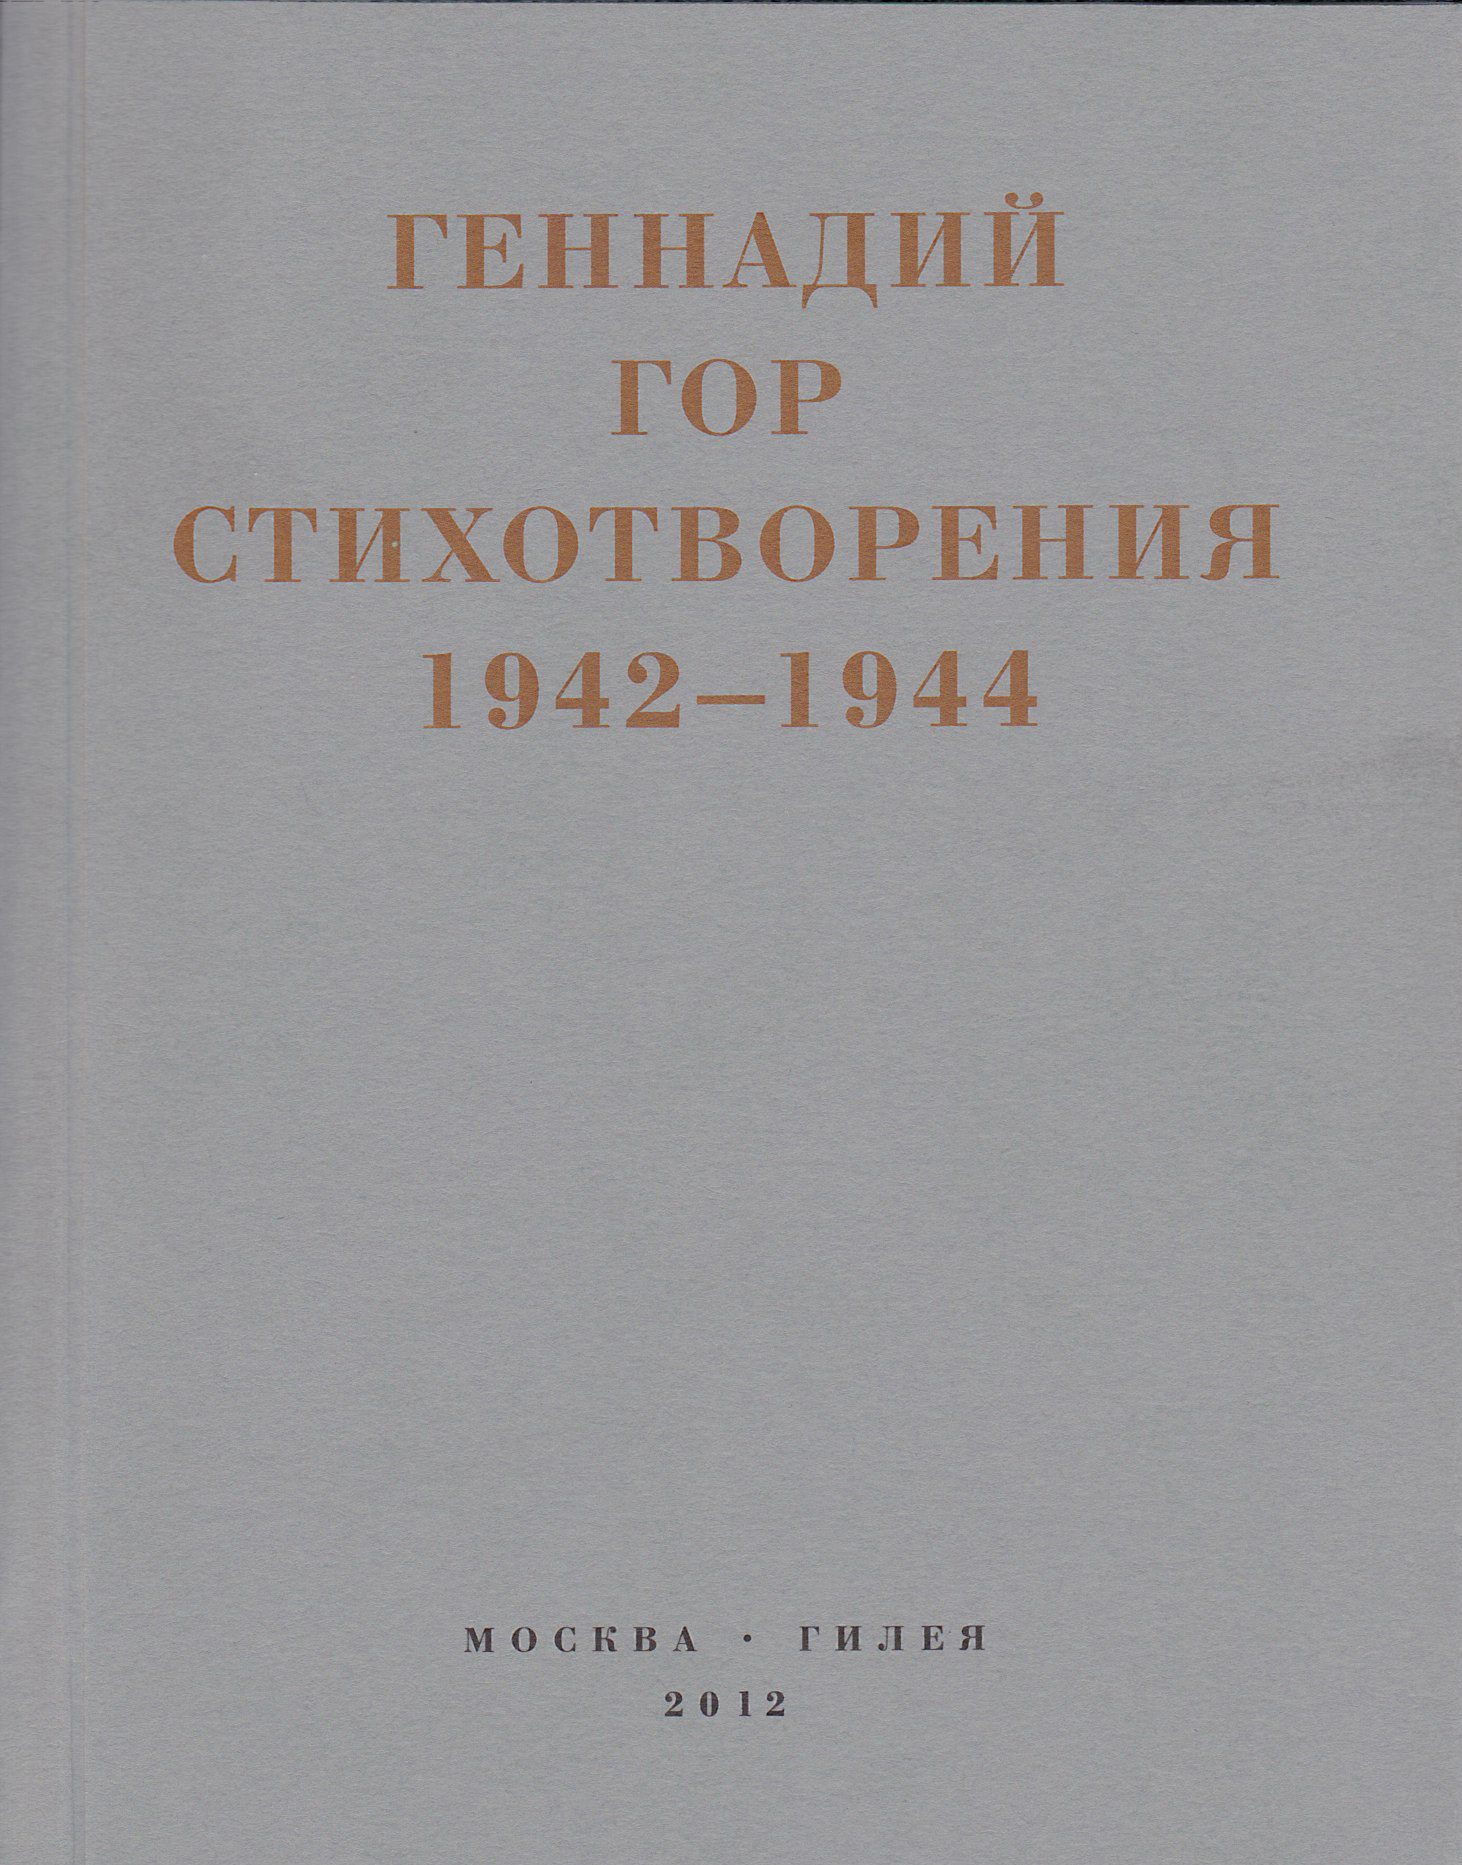 Капля крови в снегу. Стихотворения 1942-1944 - Геннадий Самойлович Гор